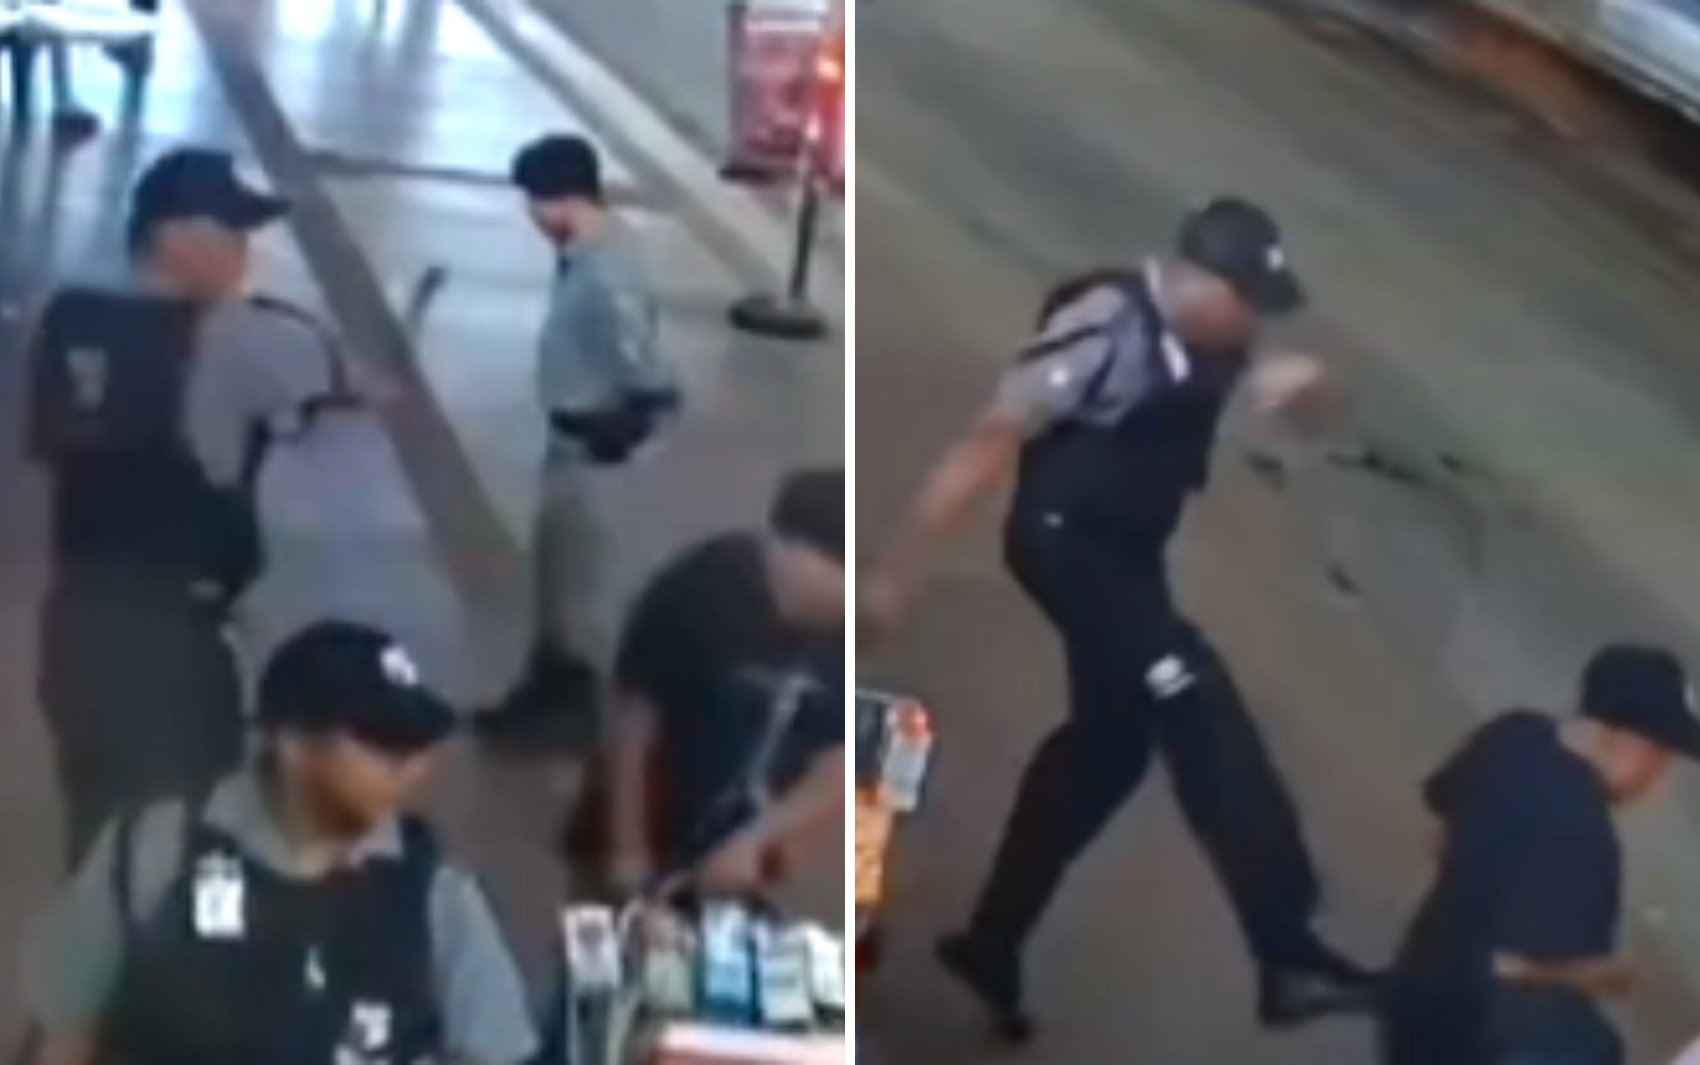 Segurança dá golpe de cassetete e tapas em vendedor ambulante dentro de terminal em Goiânia; vídeo